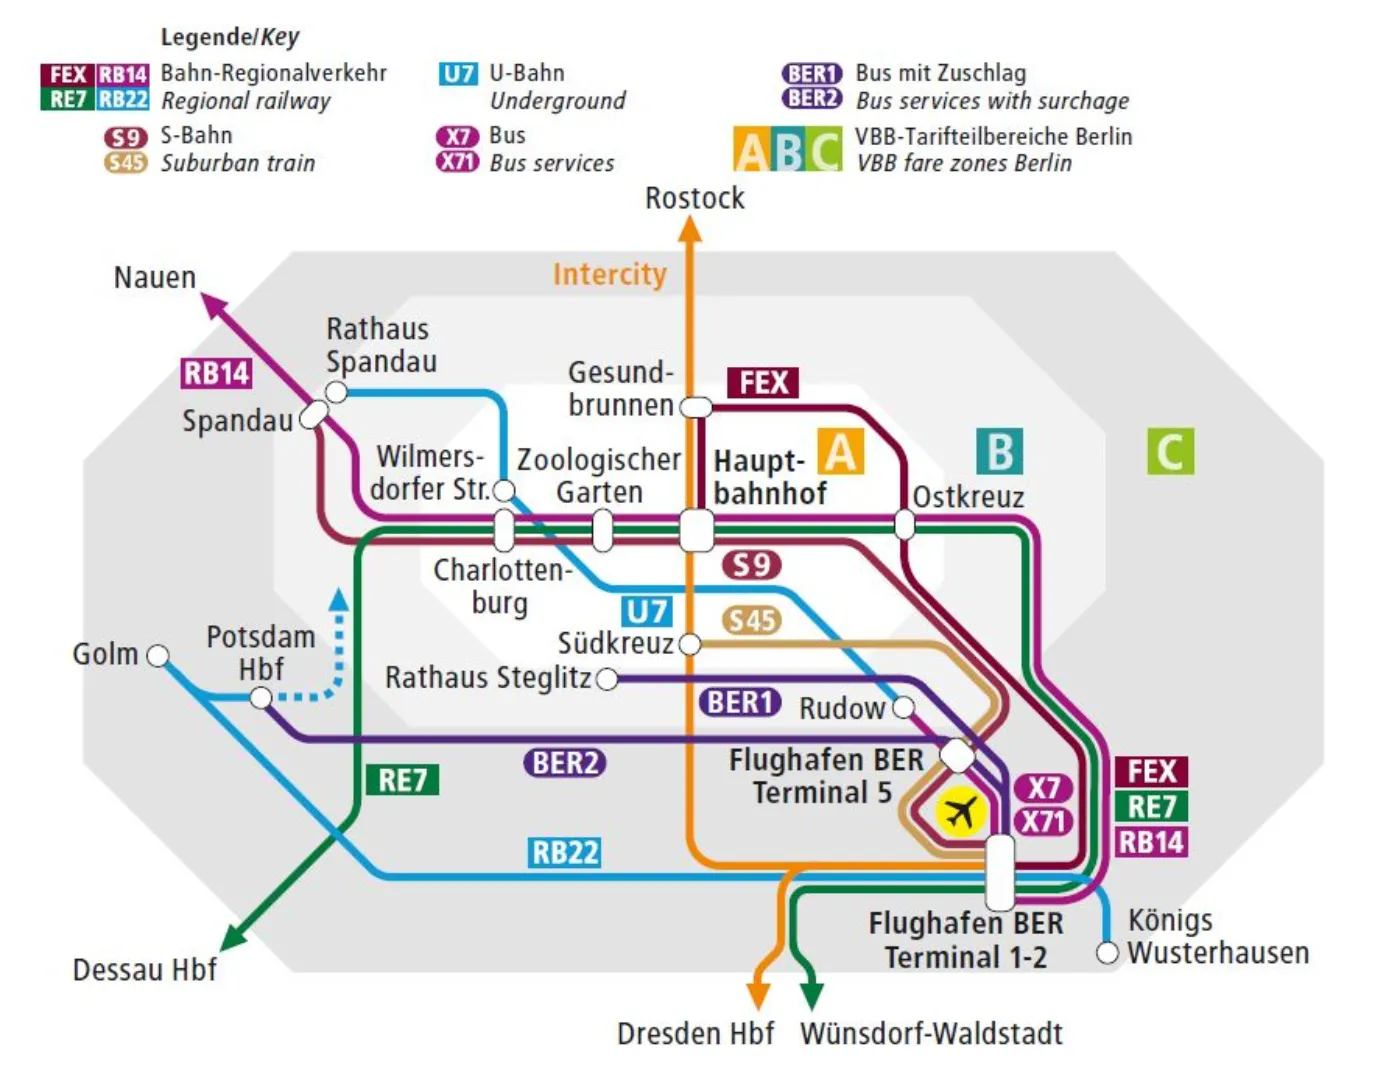 BER Public Transit Connections